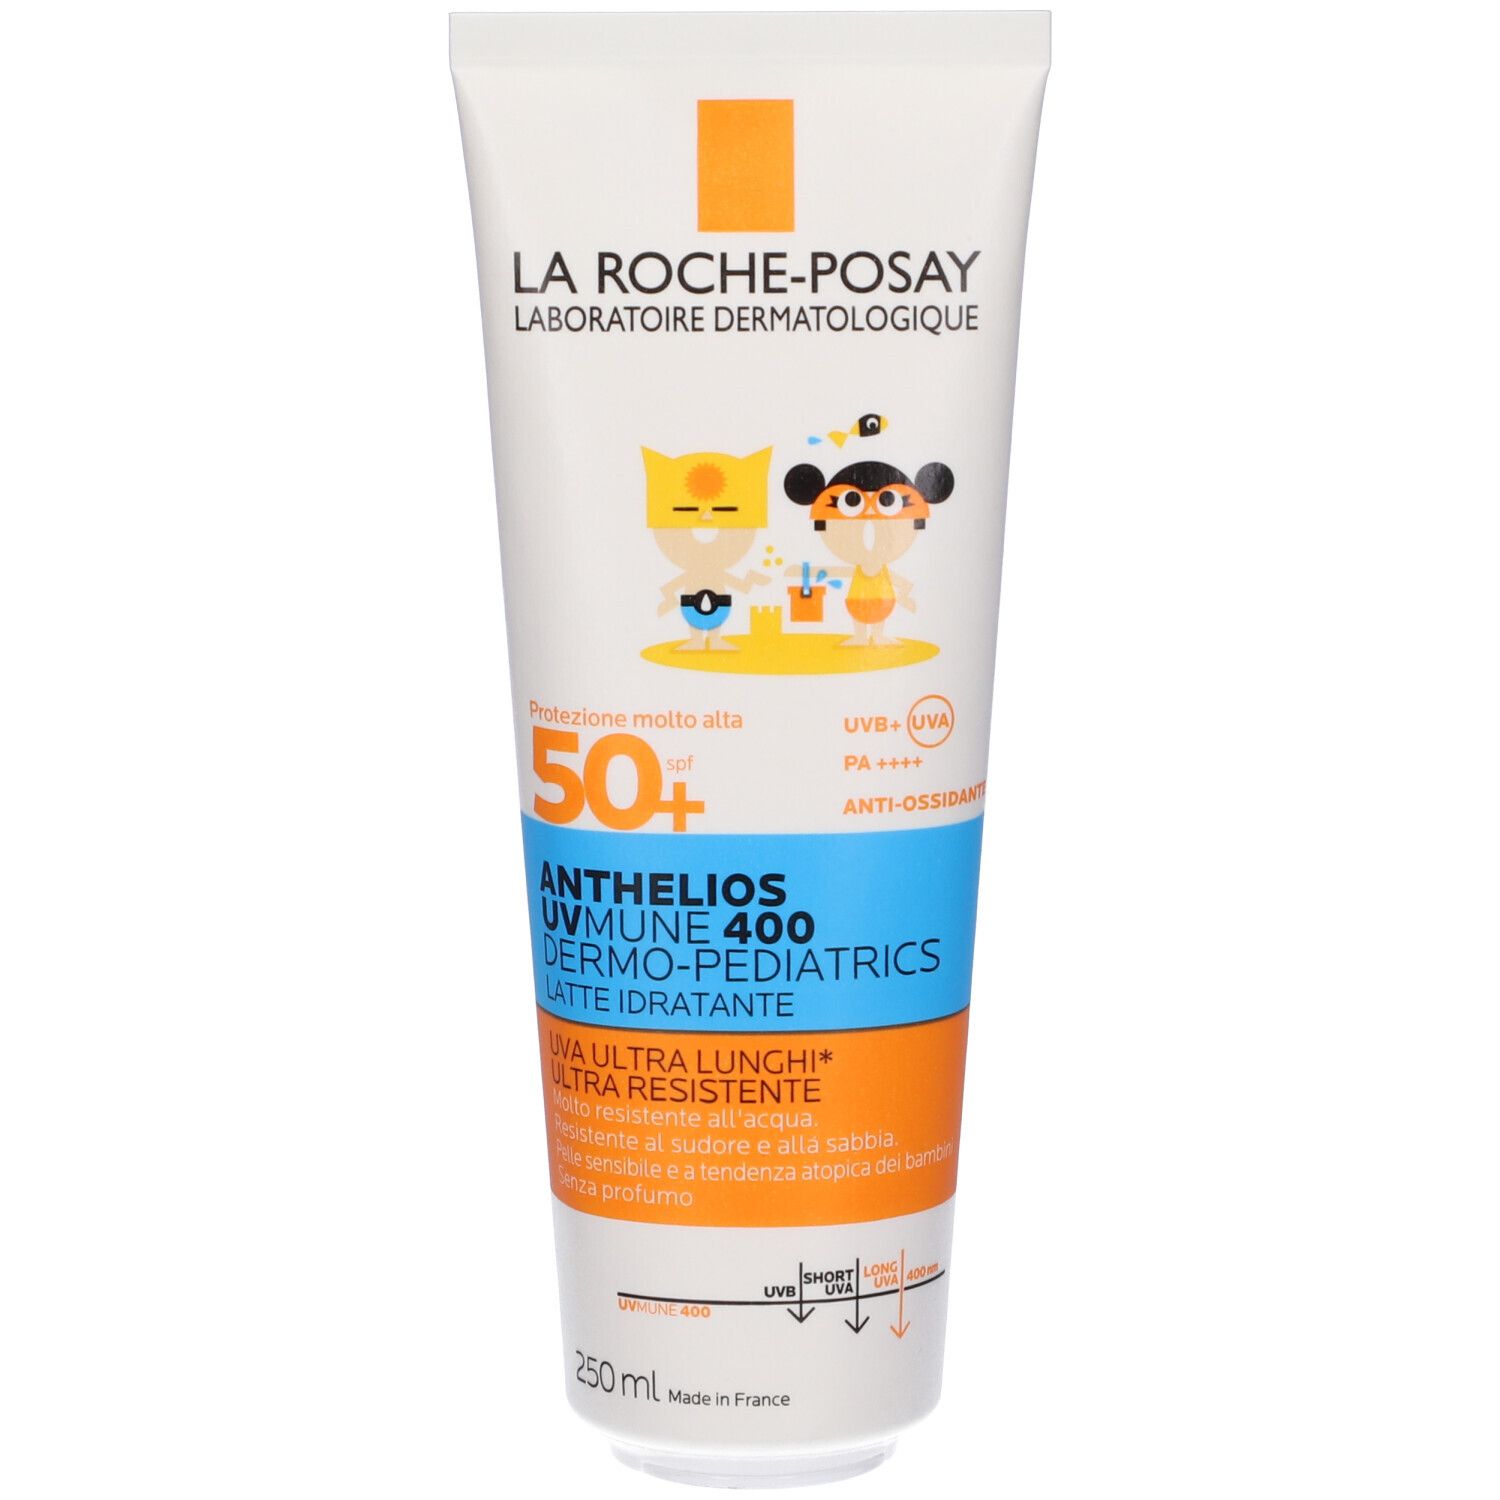 La Roche-Posay Anthelios UVMUNE 400 Dermo-Pediatrics Latte Idratante SPF 50+250ml